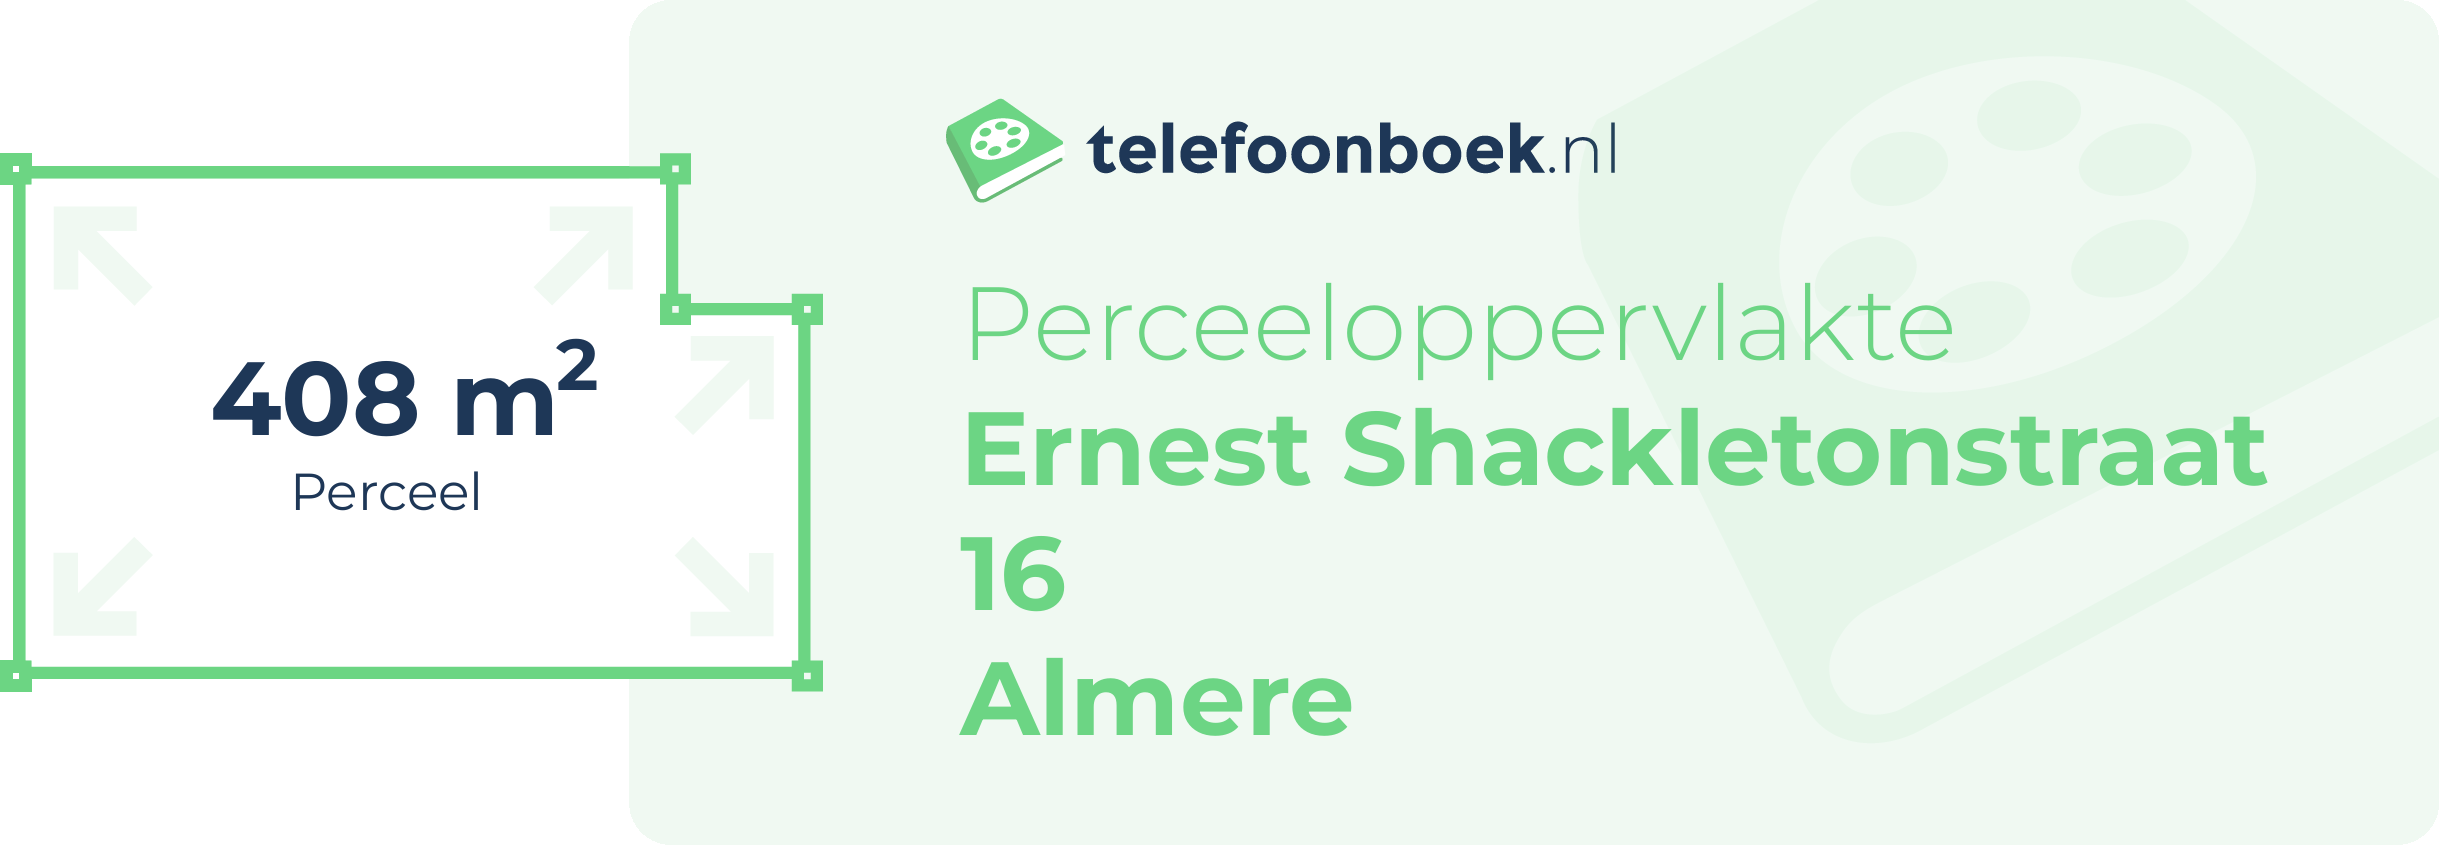 Perceeloppervlakte Ernest Shackletonstraat 16 Almere